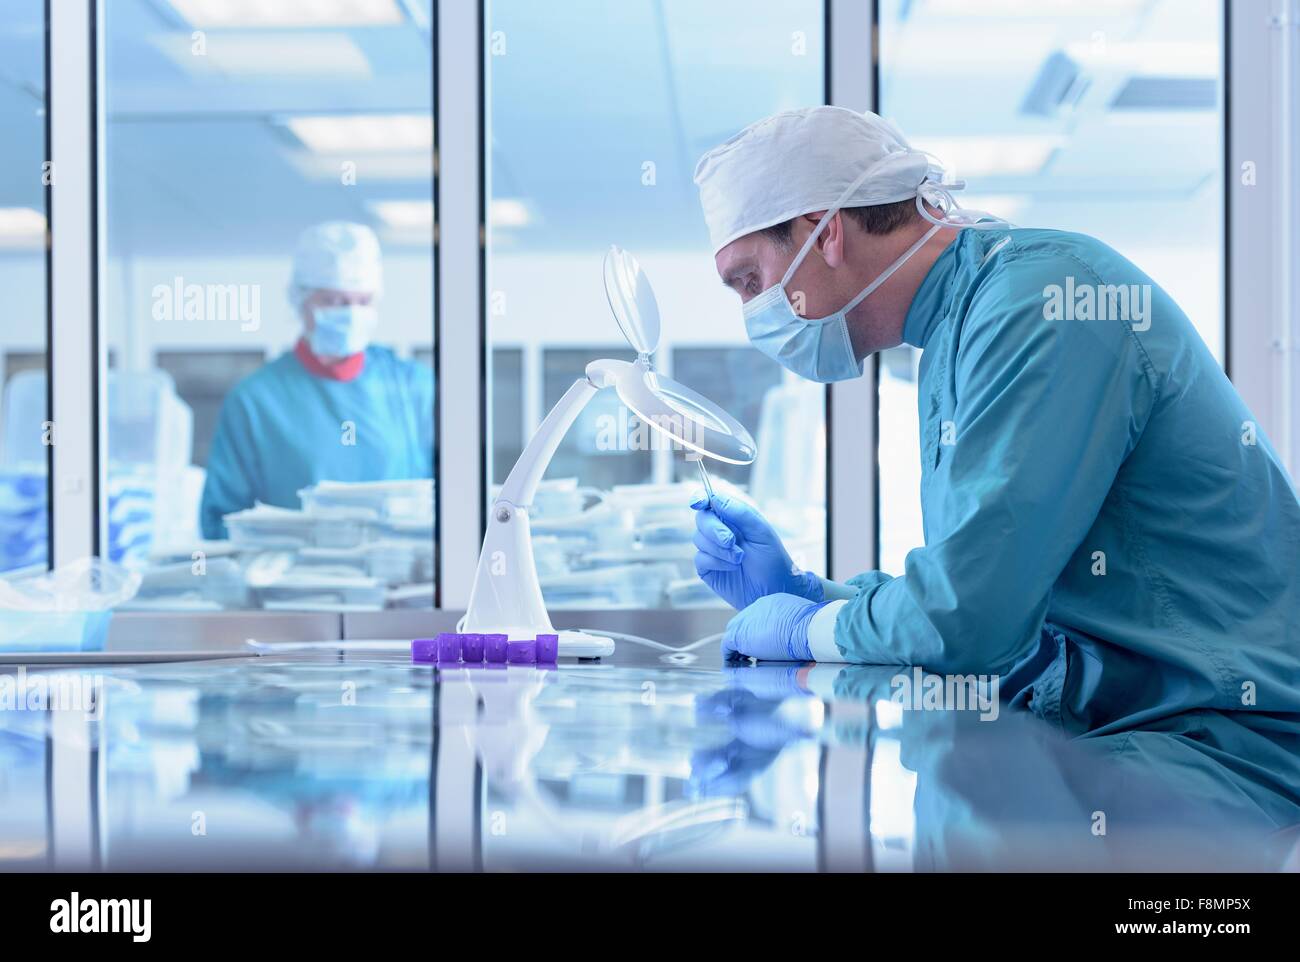 Los trabajadores inspeccionando los instrumentos quirúrgicos en sala limpia de fábrica de instrumentos quirúrgicos Foto de stock